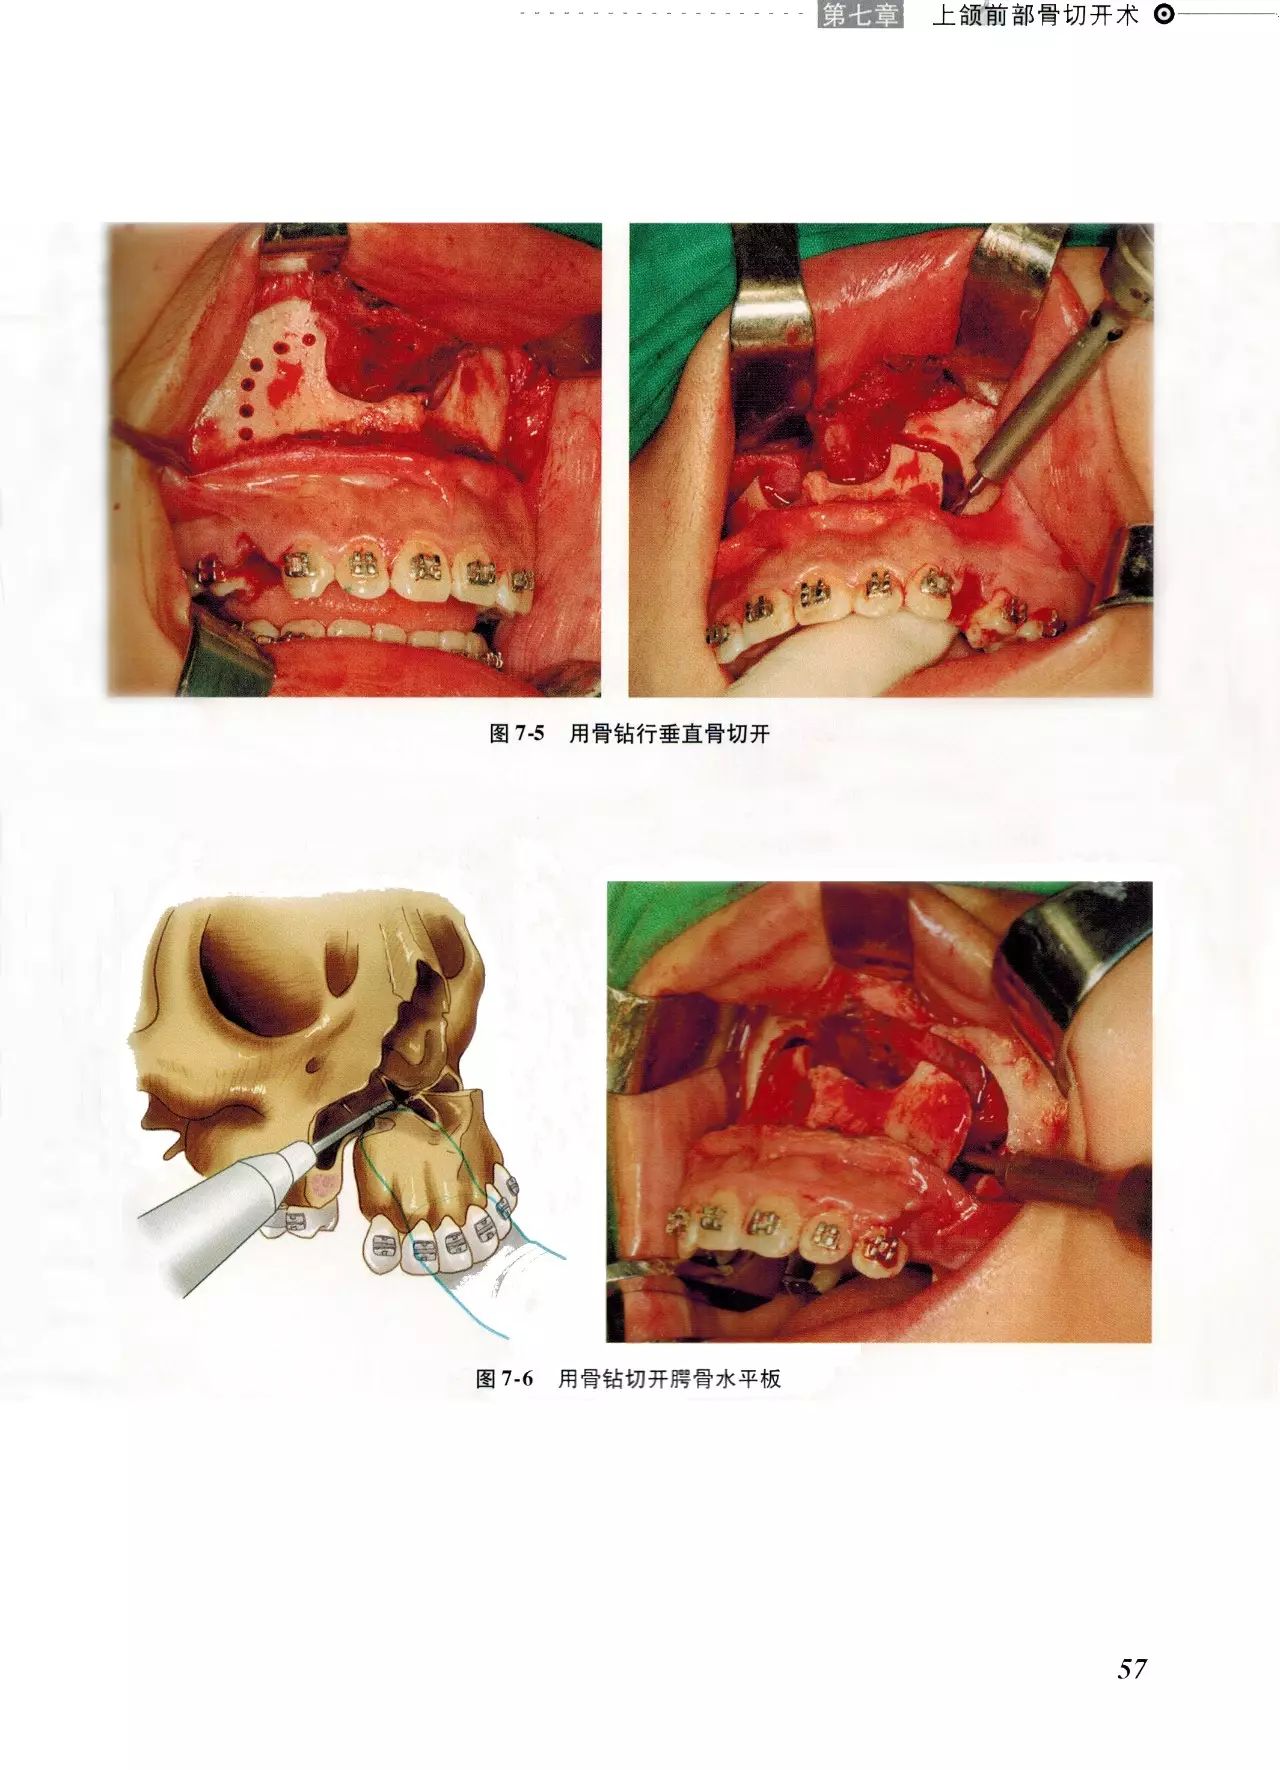 《颌面骨骼整形手术图谱》节选学习(主编:胡静,王大章)